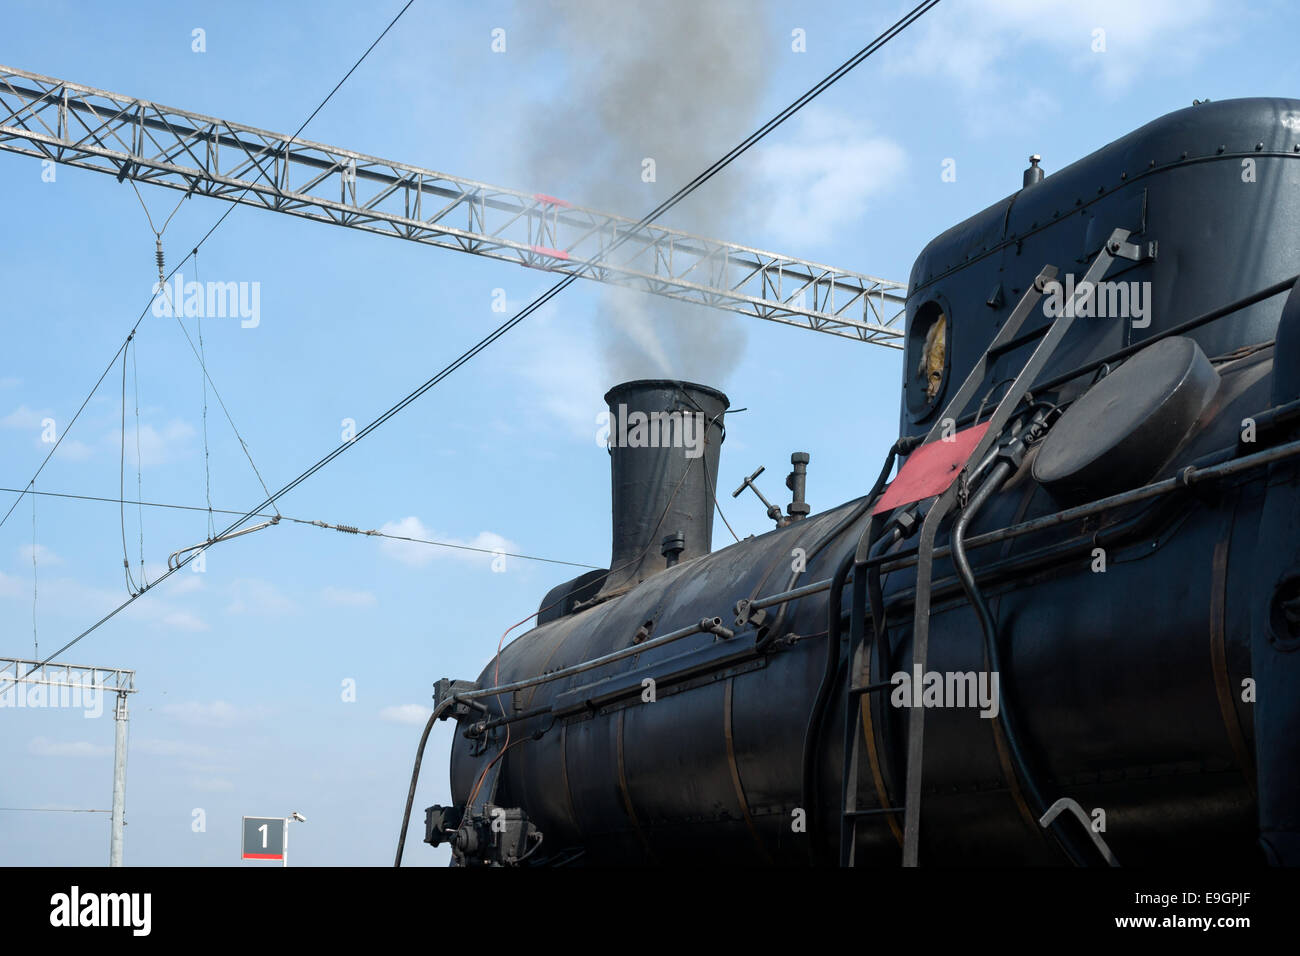 Dampf-Lokomotive in Dampf und abfahrbereit. Teilansicht des schwarzen  Kessel und Schornstein. Es tritt Rauch aus einem Schornstein  Stockfotografie - Alamy